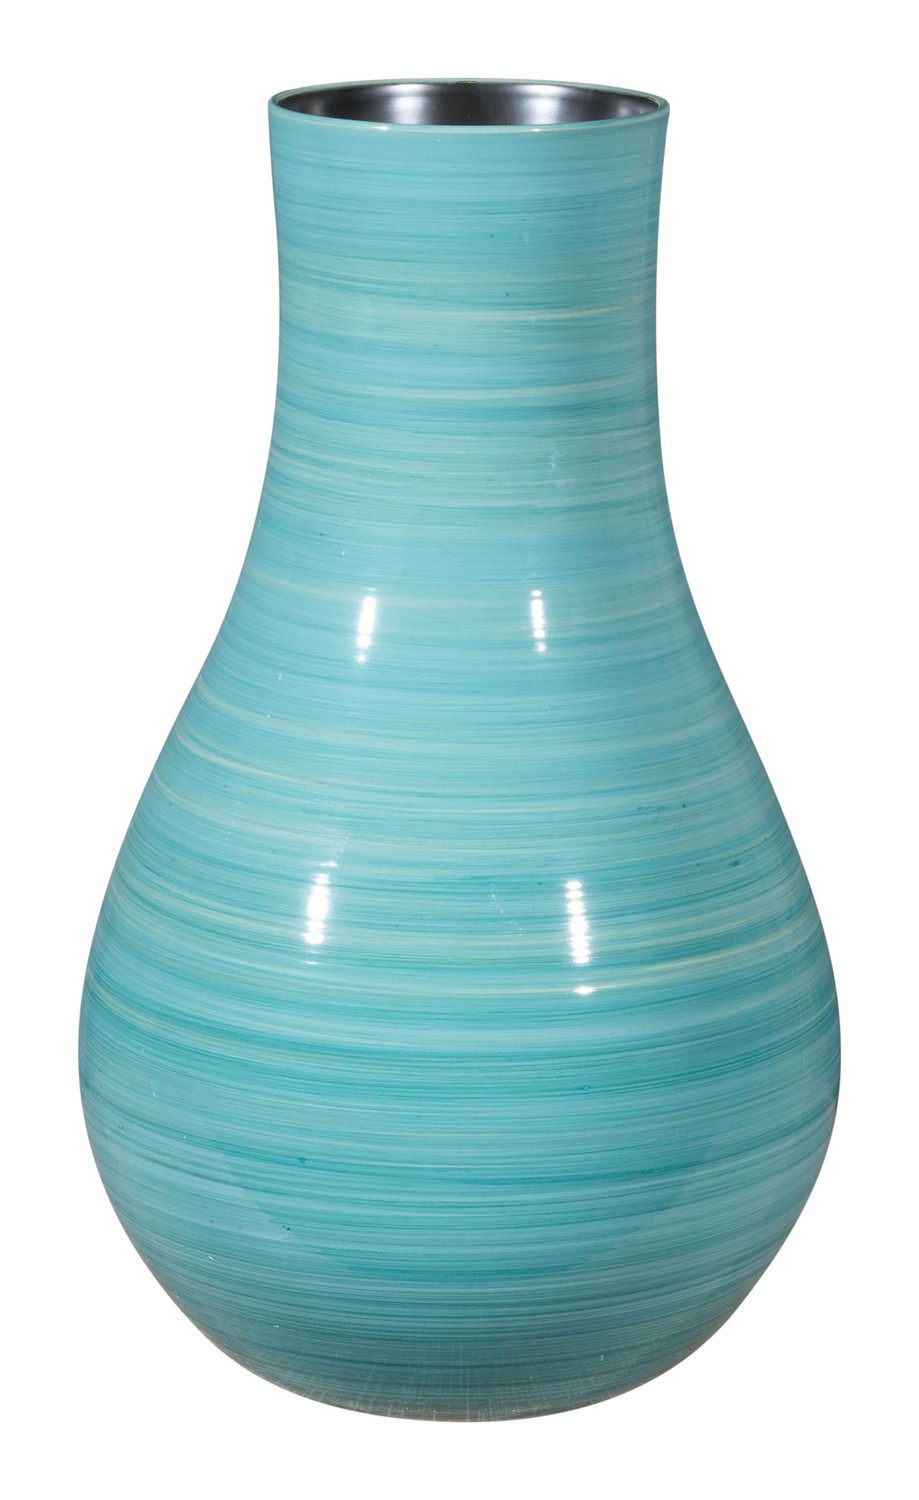 9.8" x 9.8" x 16.7" Blue, Ceramic, Large Vase